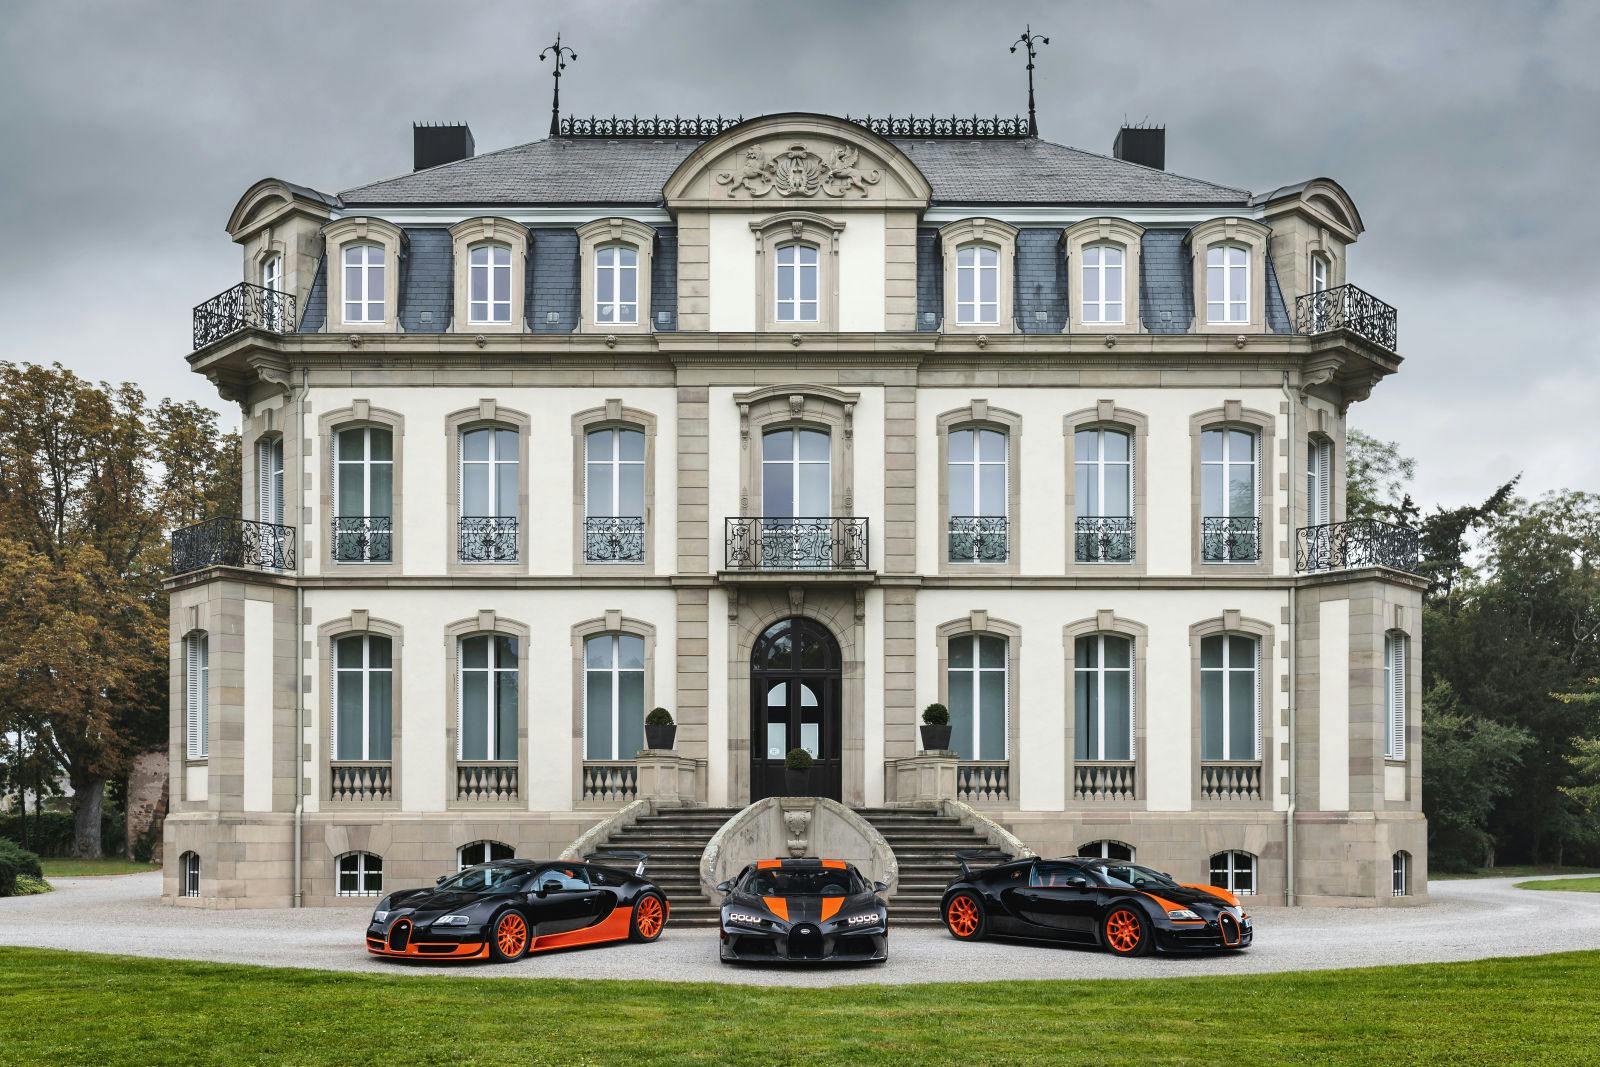 Bugattis Rekordfahrzeuge der modernen Ära (von links nach rechts): Veyron 16.4 Super Sport, Chiron Super Sport 300+, Veyron 16.4 Grand Sport Vitesse.